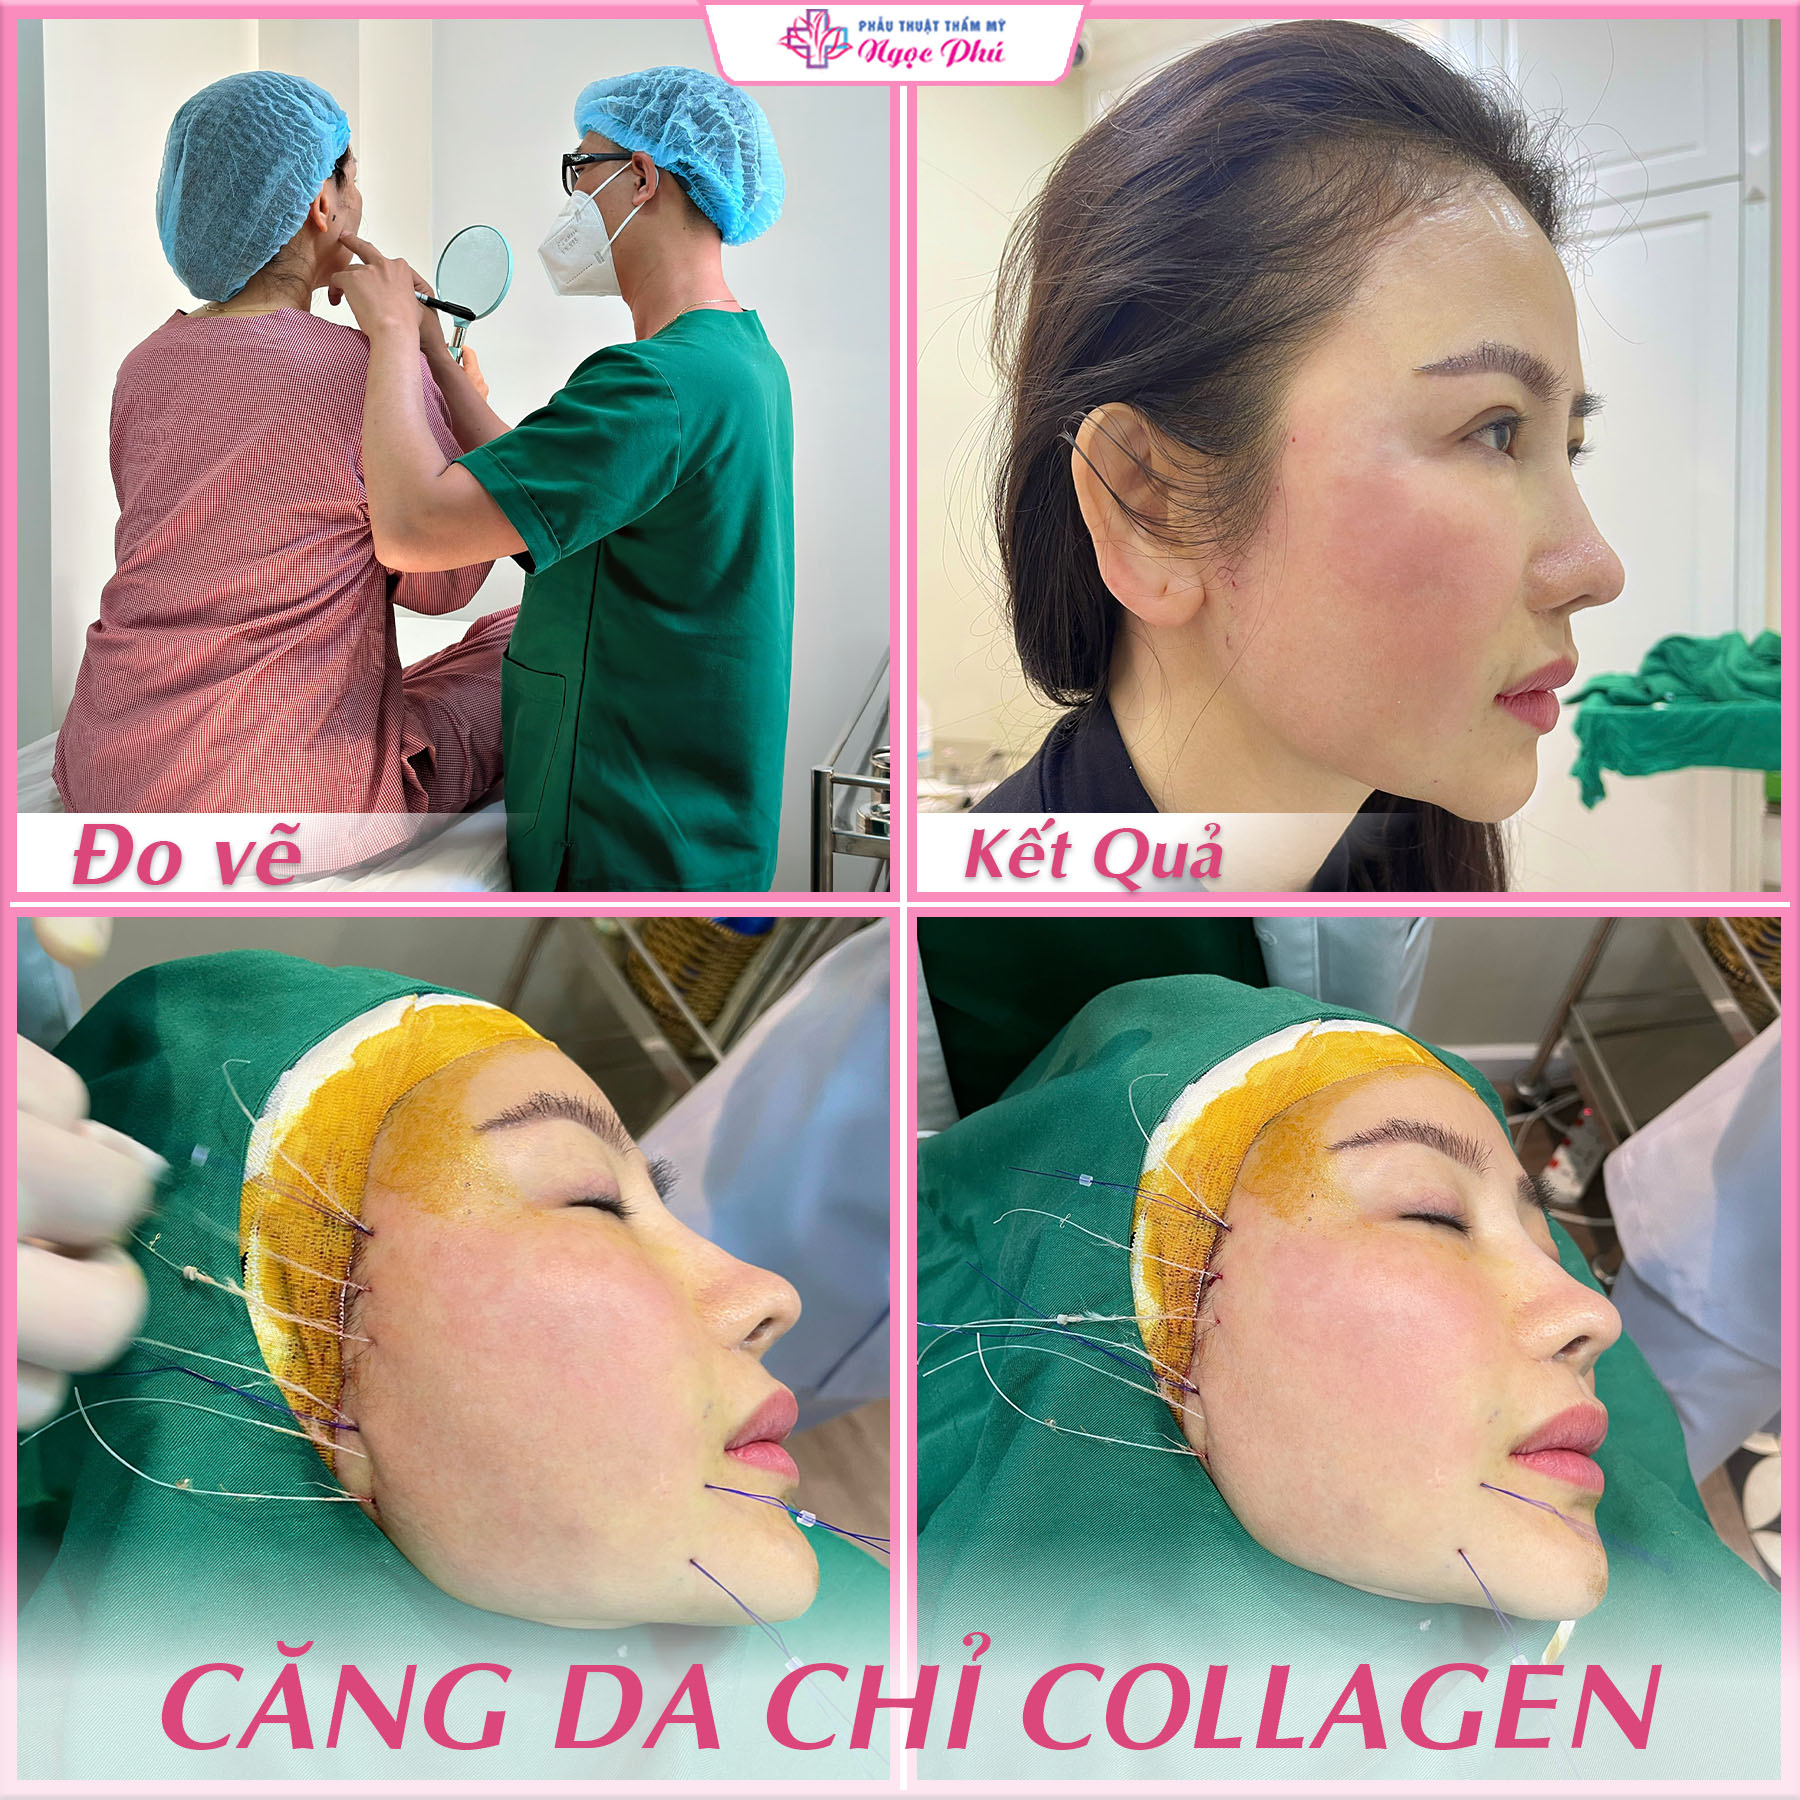 Quy trình căng da mặt bằng chỉ collagen tại Thẩm mỹ Ngọc Phú